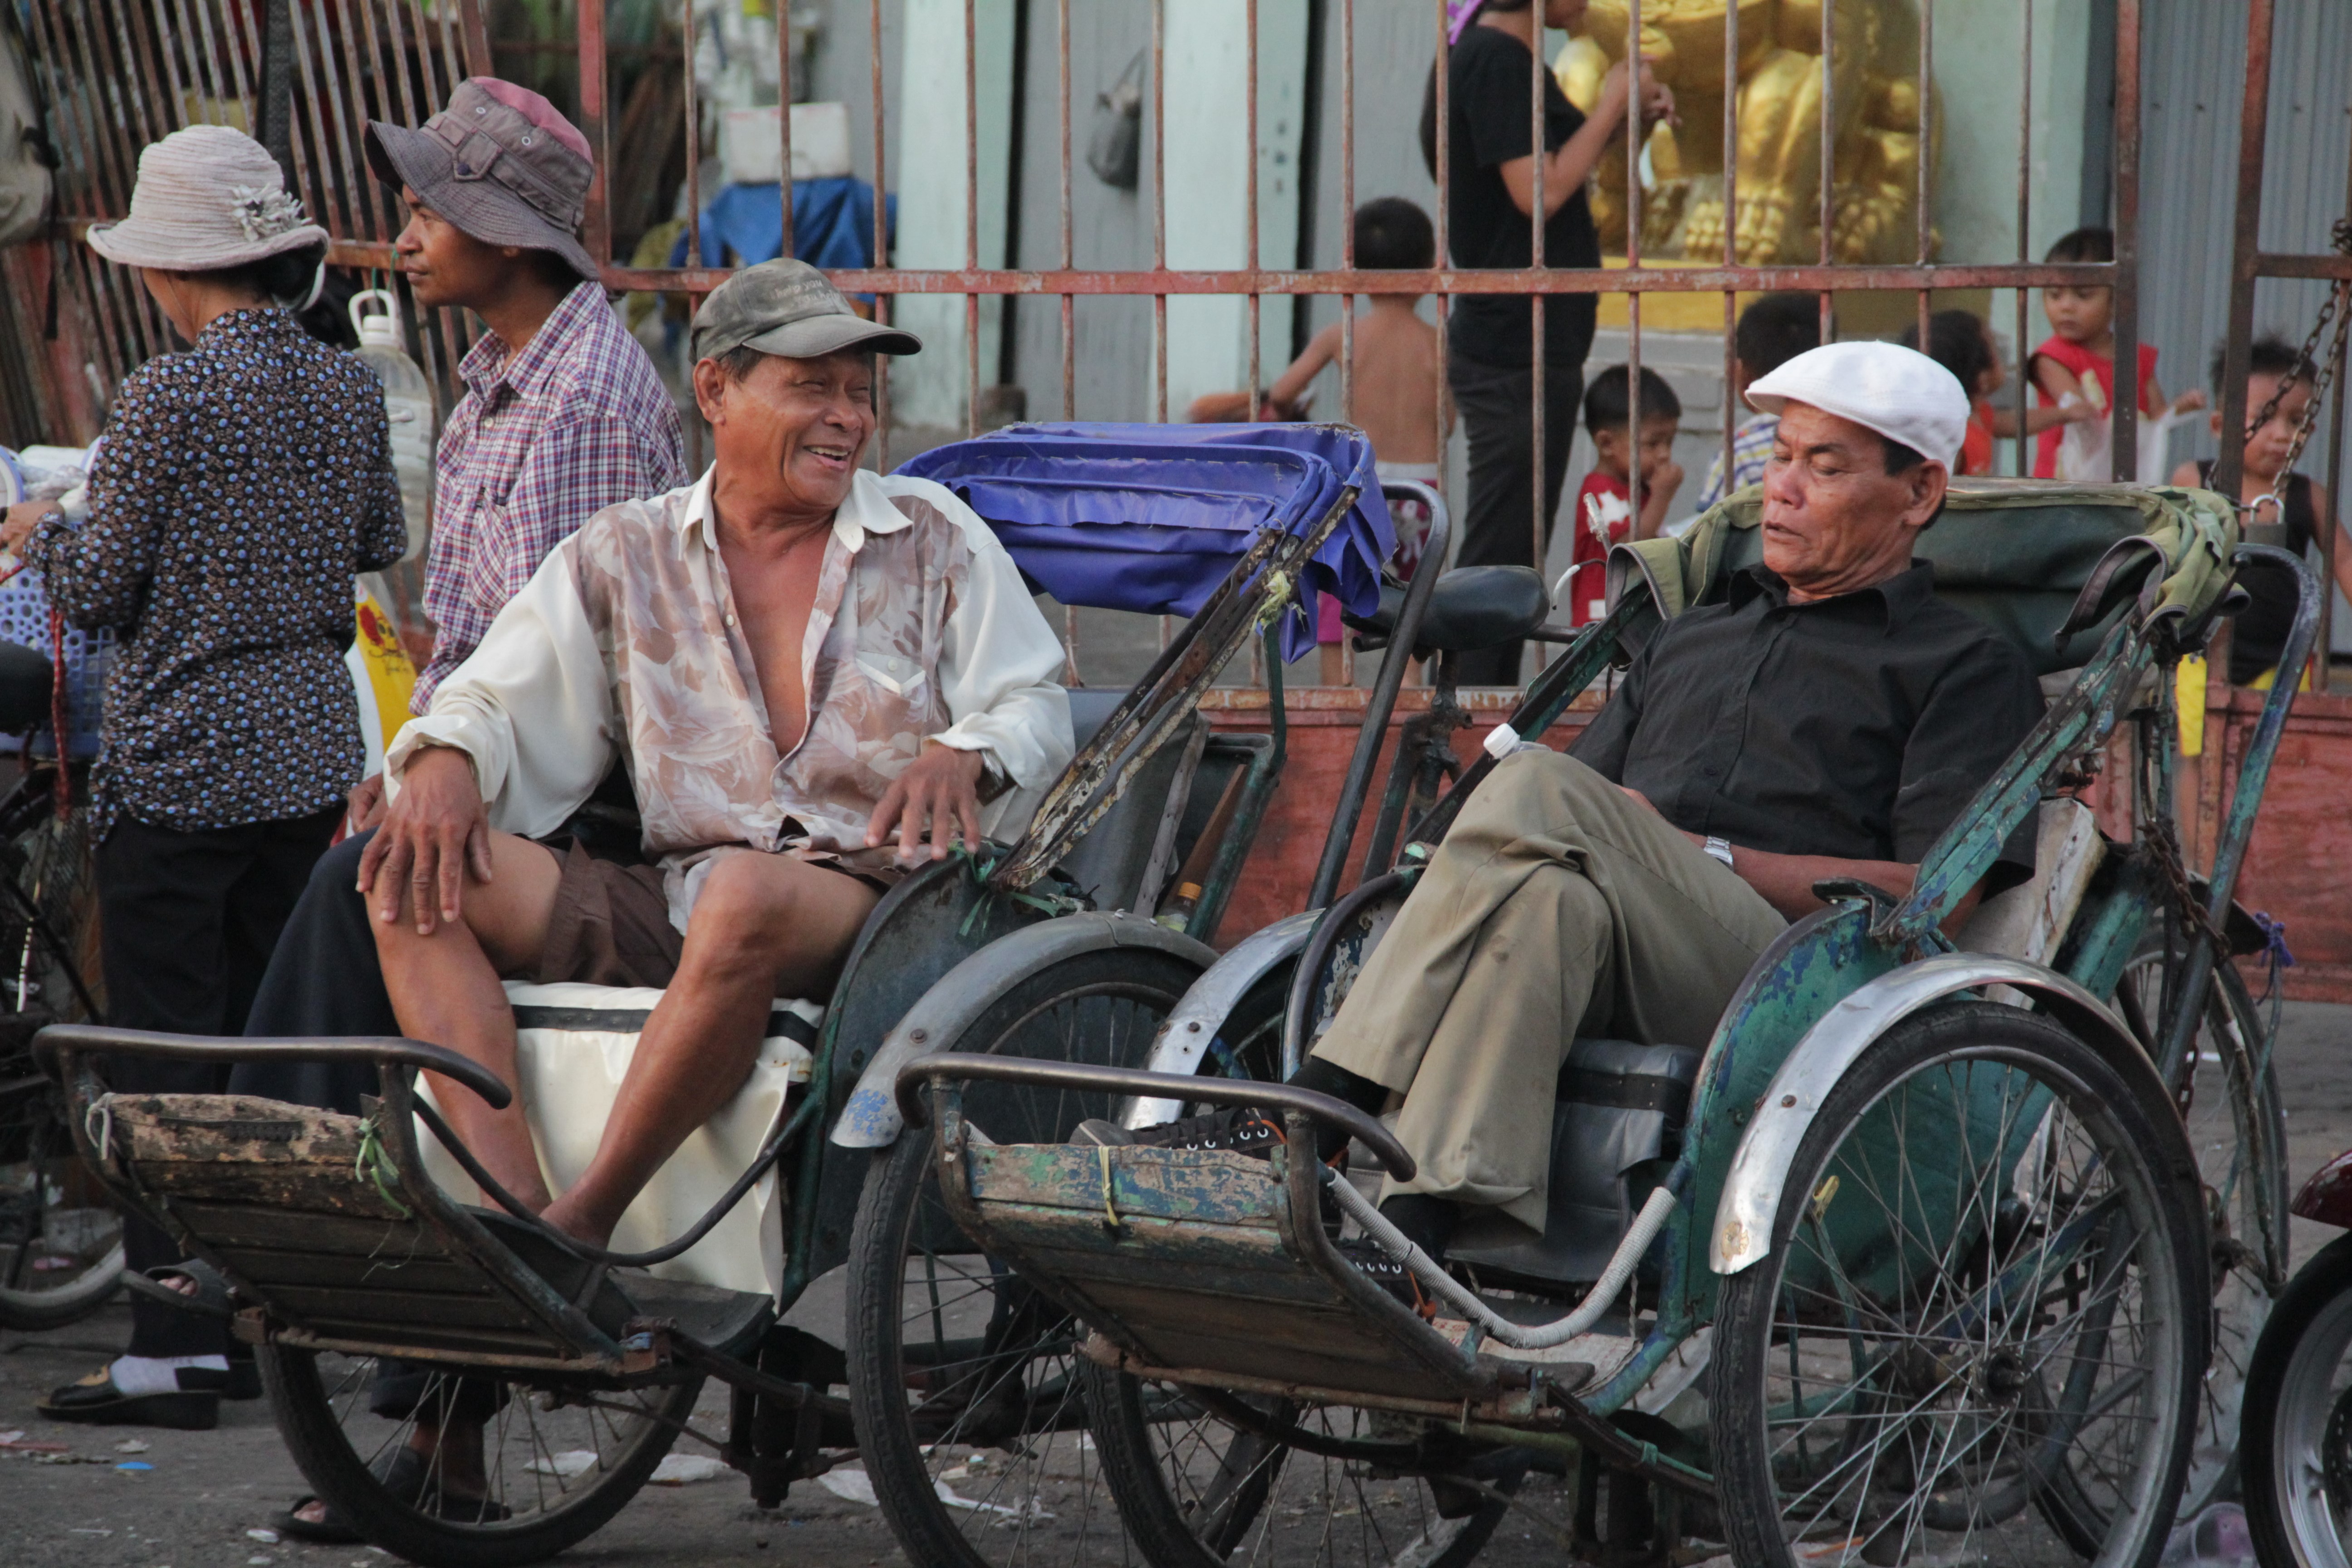 Entre deux promenades en rickshaw (tricycle qui permet de transporter les touristes), les hommes prennent une pause (© Jérôme Decoster).